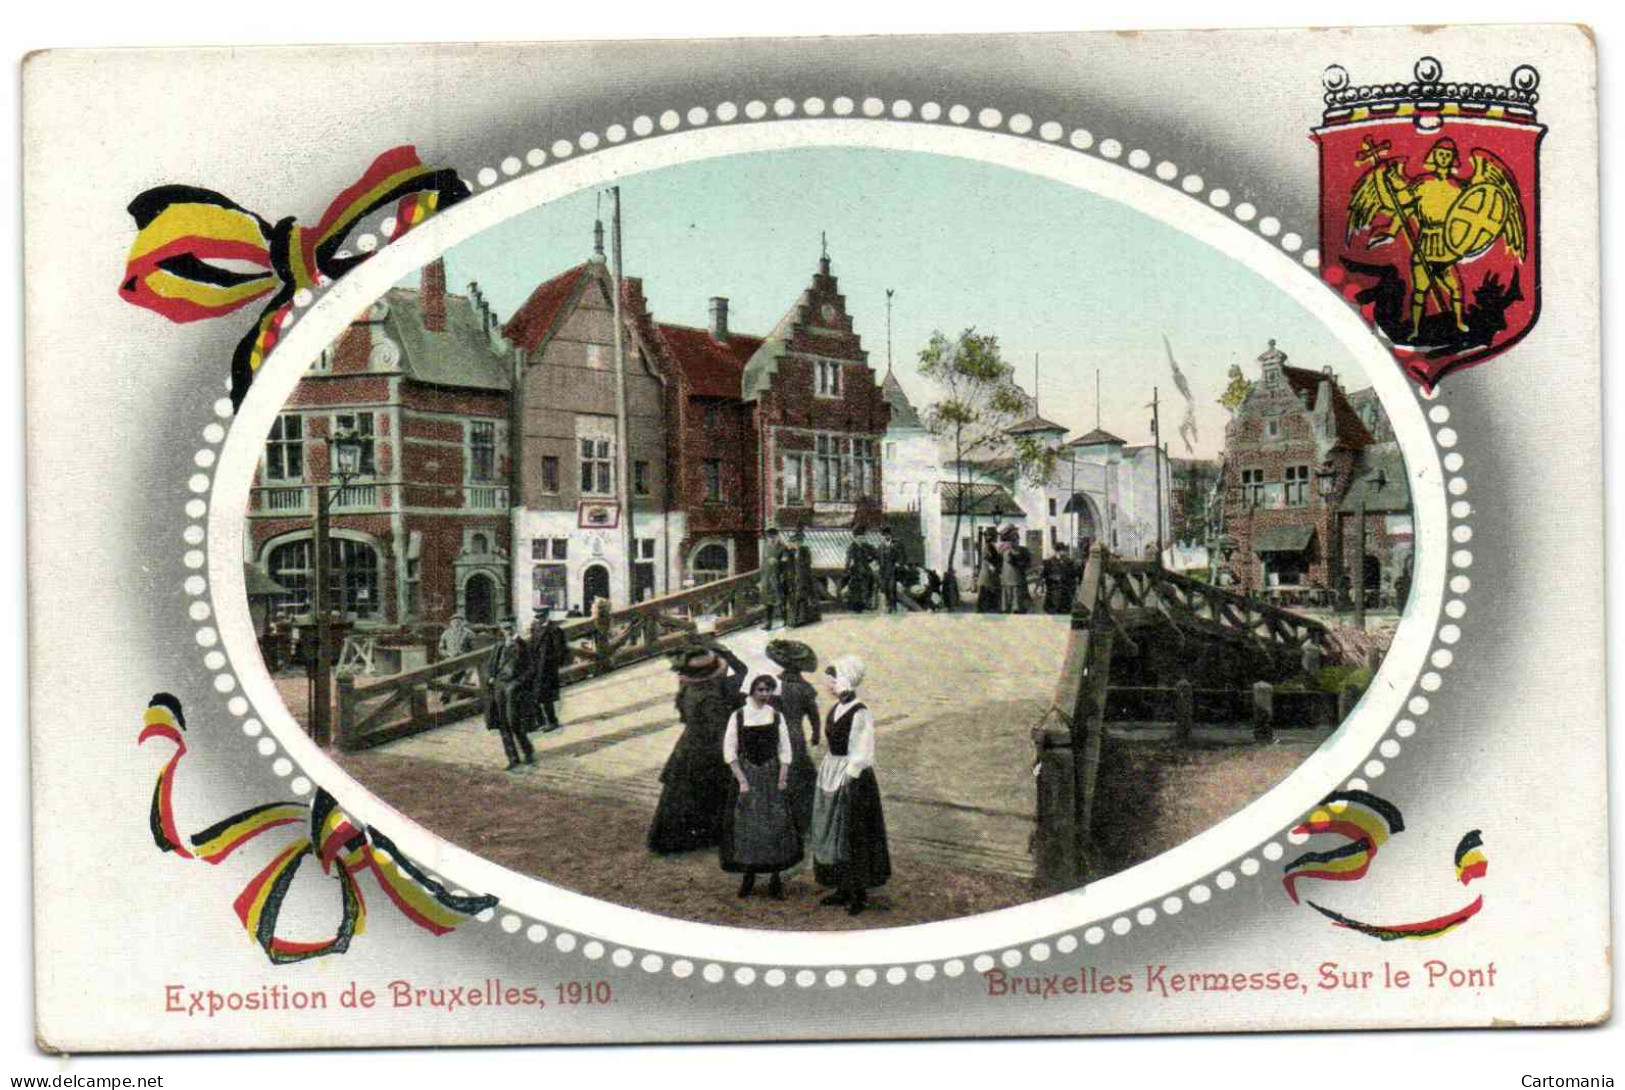 Exposition De Bruxelles 1910 - Bruxelles Kermesse - Sur Le Pont - Expositions Universelles